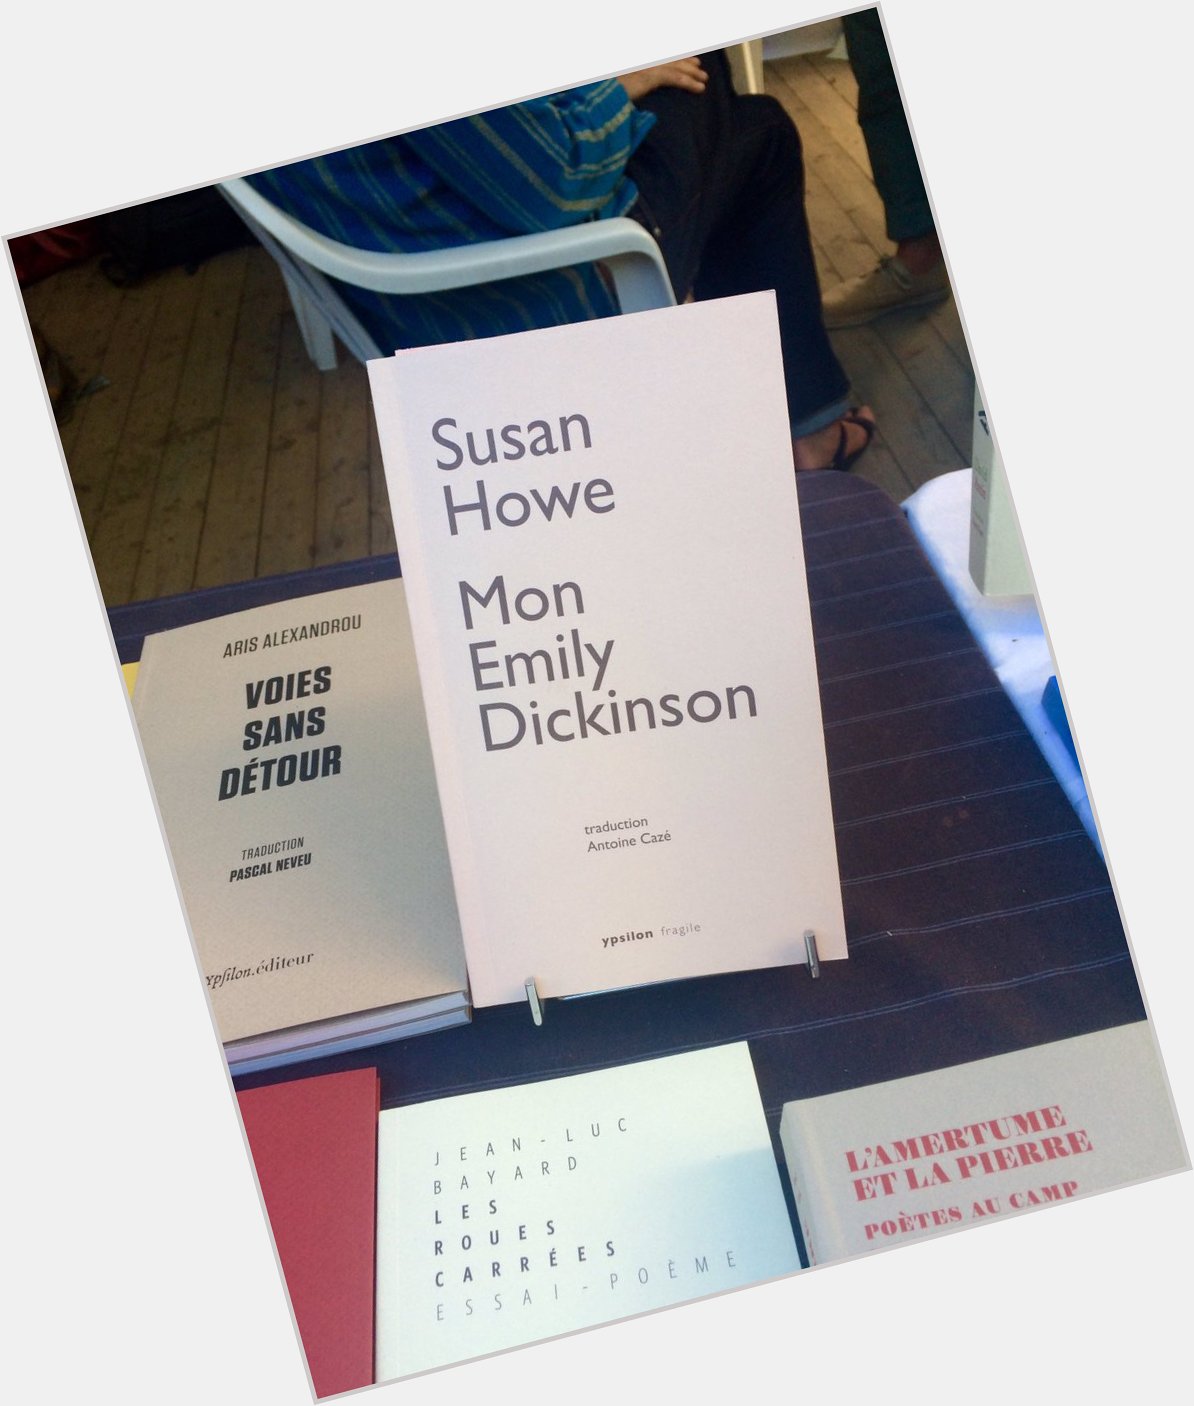 At Paris Poetry Book Fair, happy birthday Susan Howe!  